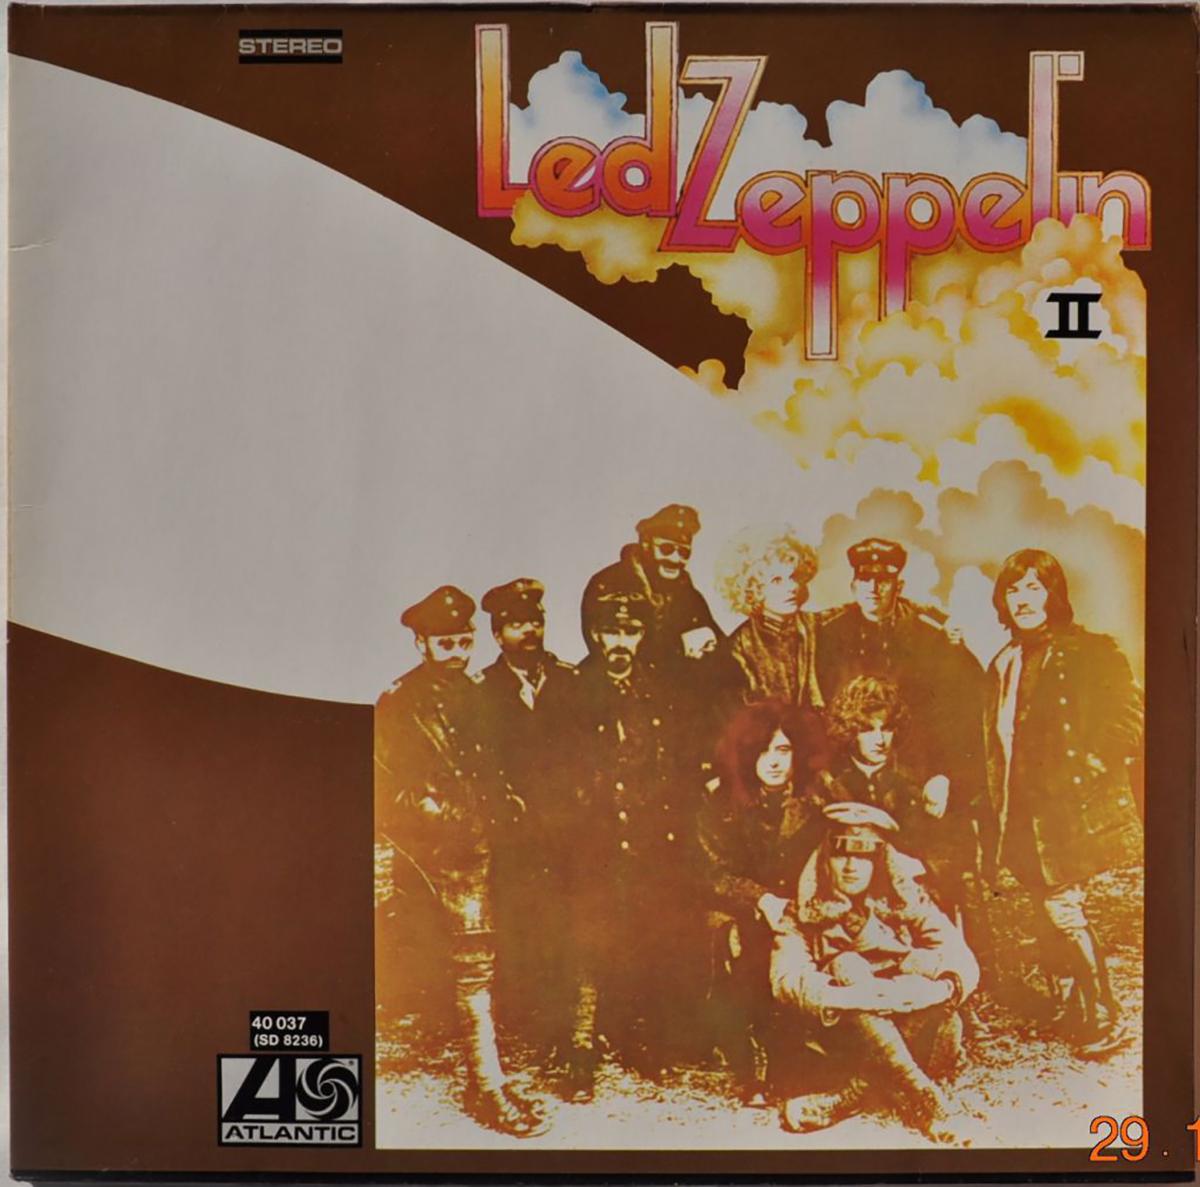 Couverture du deuxième album studio de Led Zeppelin, II